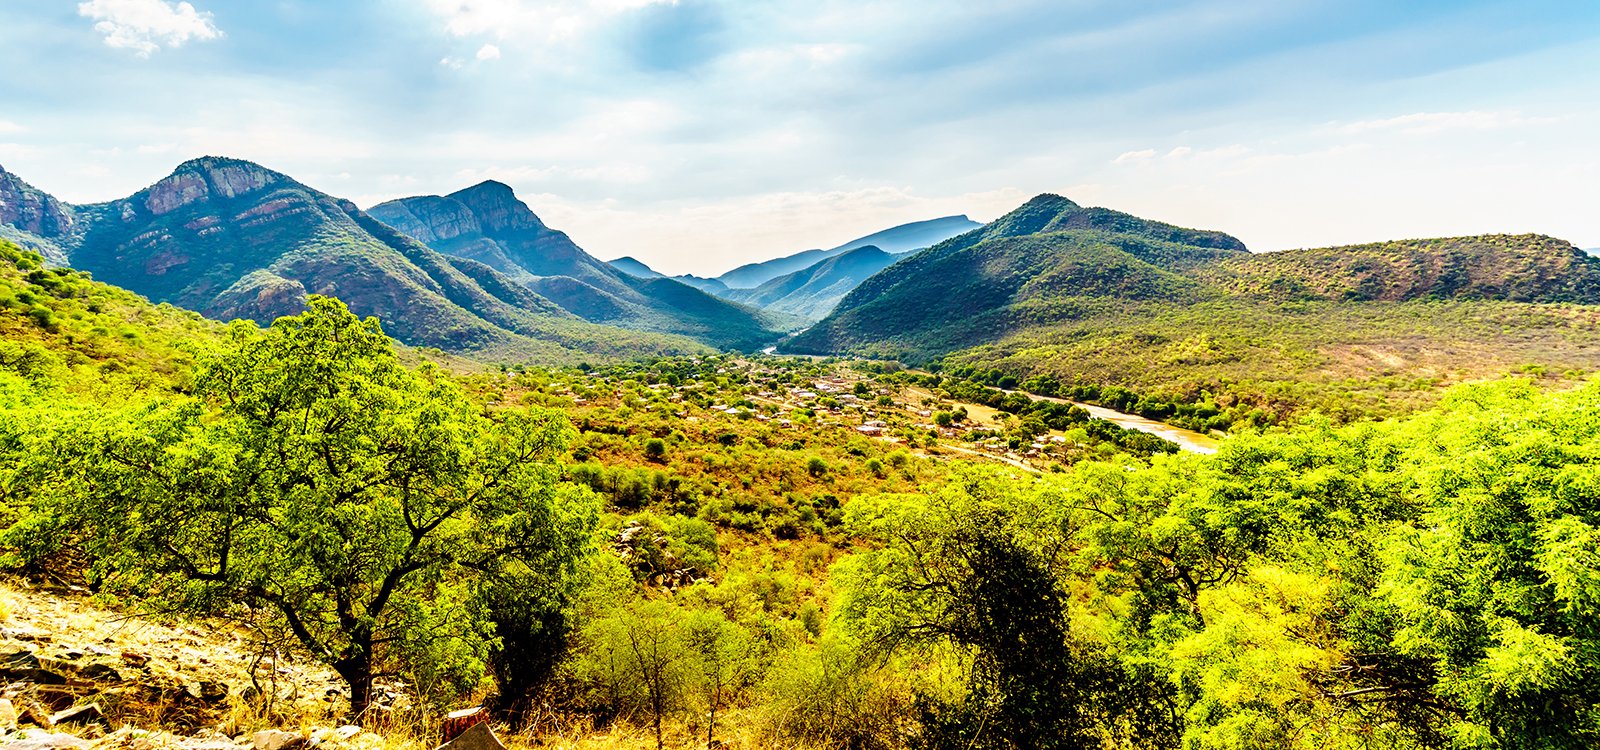 <p>Cerca de dois terços das terras de Mpumalanga são usadas para agricultura, incluindo pastagens naturais e lavouras</p>
